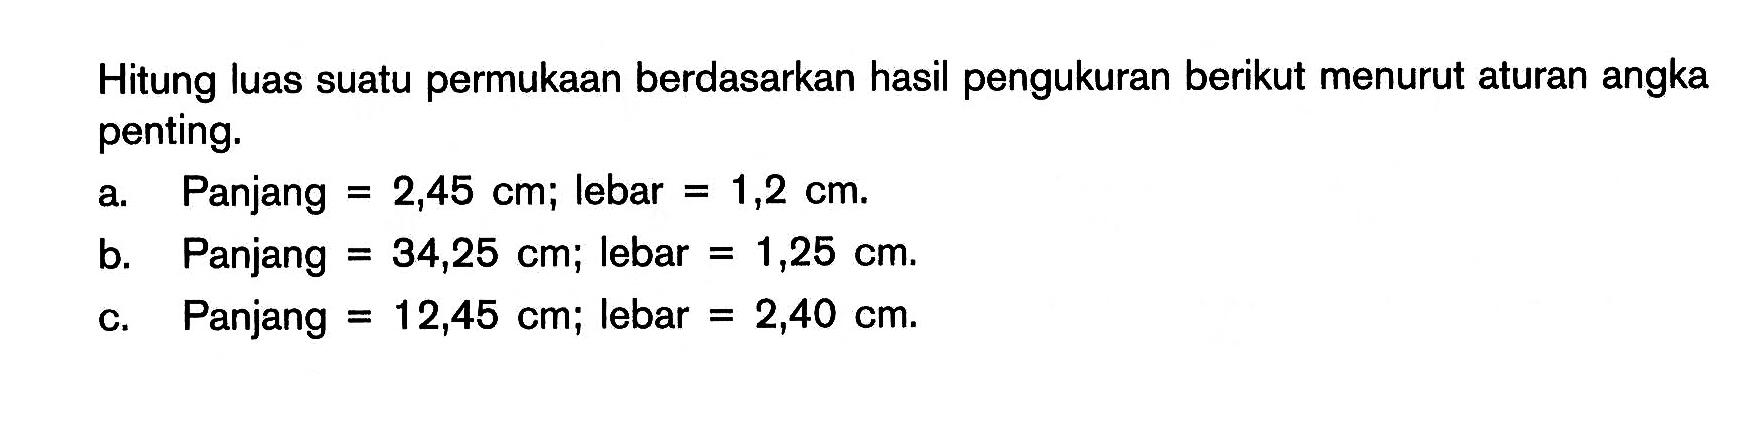 Hitunglah luas suatu permukaan berdasarkan hasil pengukuran berikut menurut aturan angka penting. a. Panjang = 2,45 m, lebar = 1,2 cm. b. Panjang = 34,25 cm, lebar = 1,25 cm. c. Panjang = 12,45 cm, lebar = 2,40 cm. 